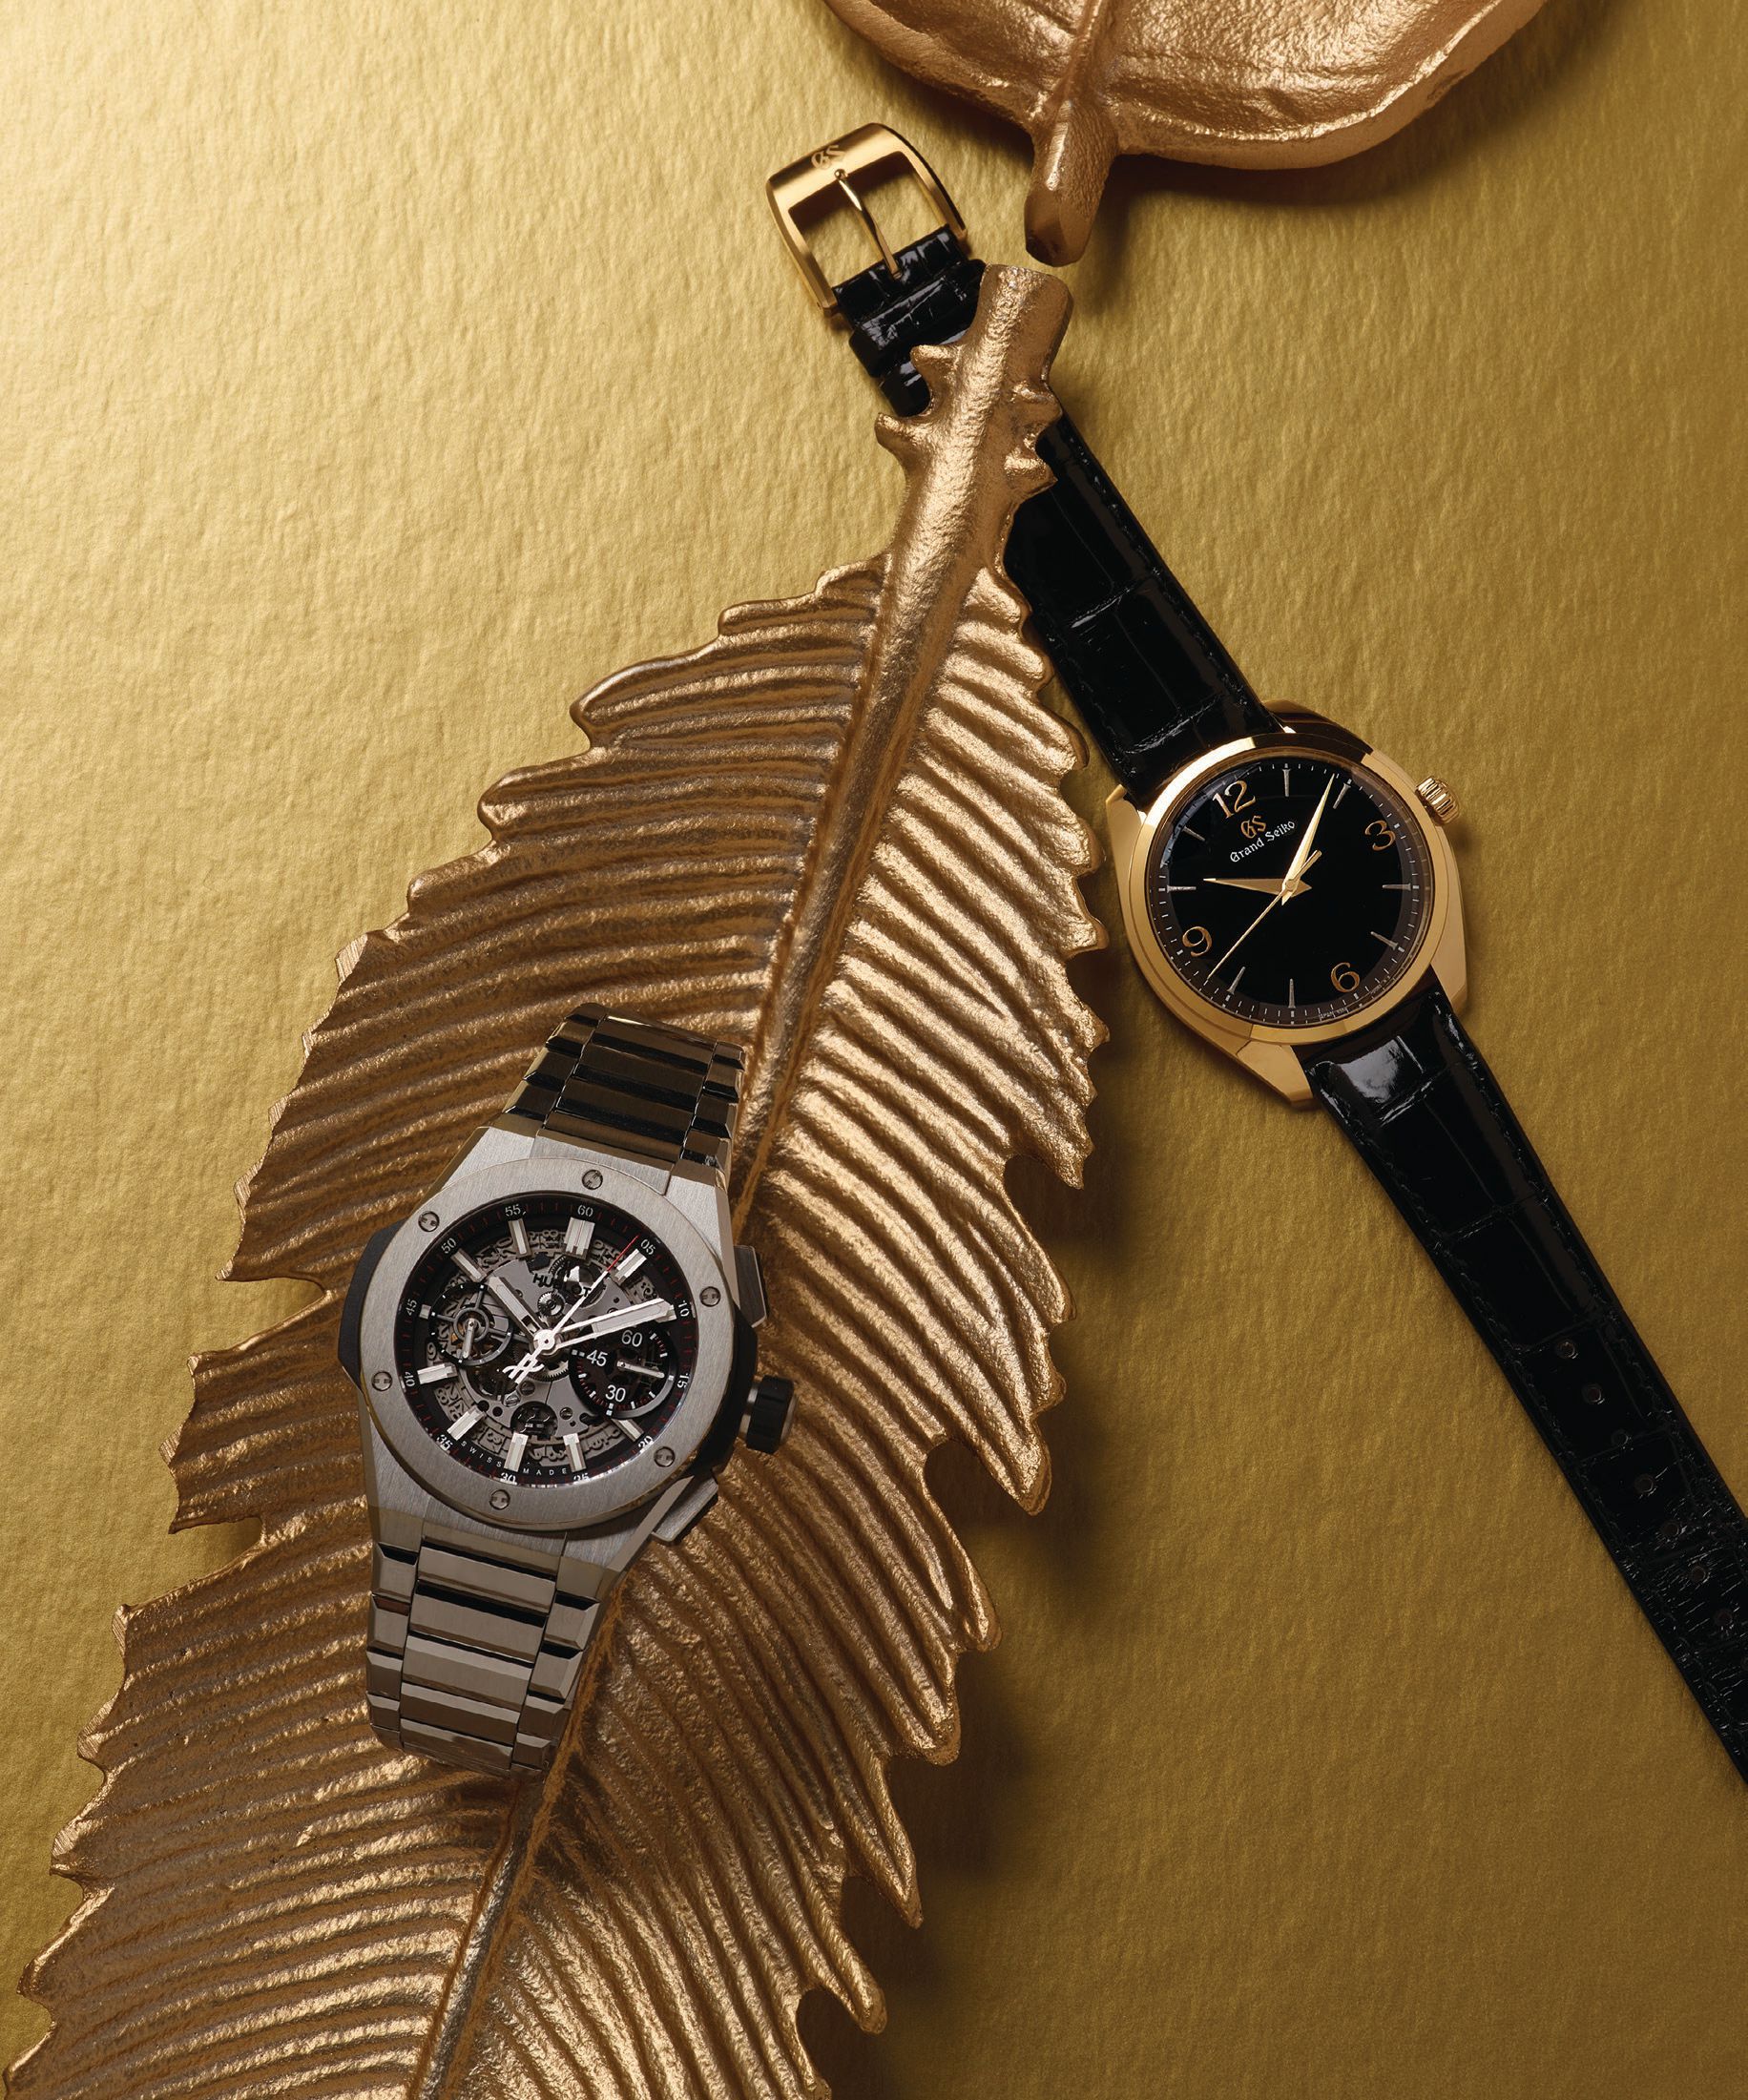 From left: Hublot Big Bang Integral titanium timepiece, hublot.com; Grand Seiko Elegance SBGW262 timepiece, grand-seiko.com.